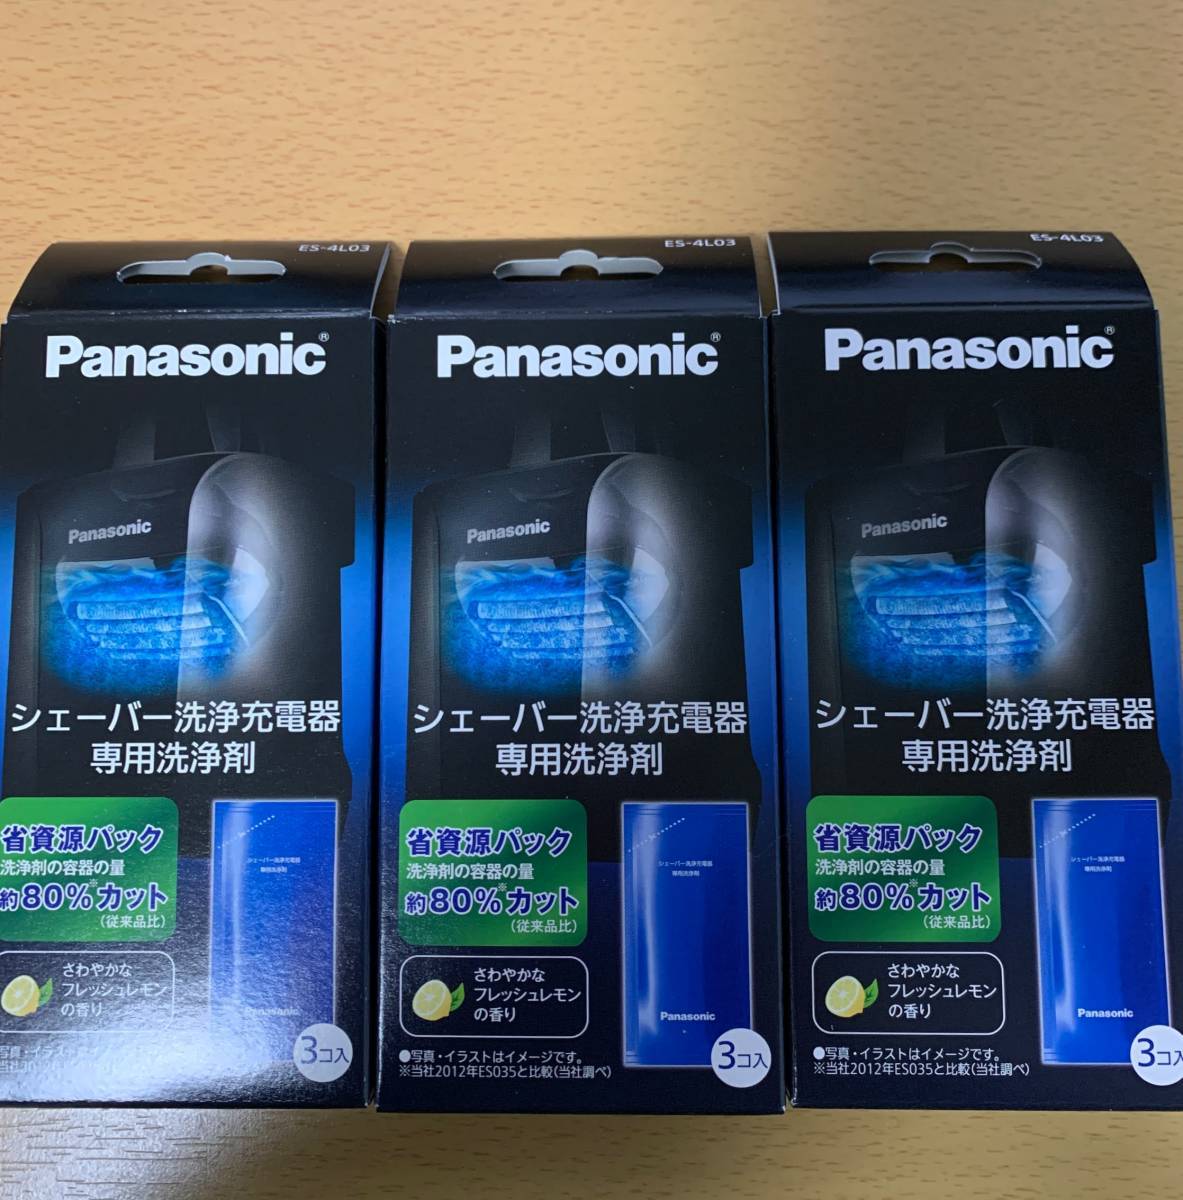 Panasonic シェーバー洗浄充電器専用洗浄剤 ES-4L03　3箱セット